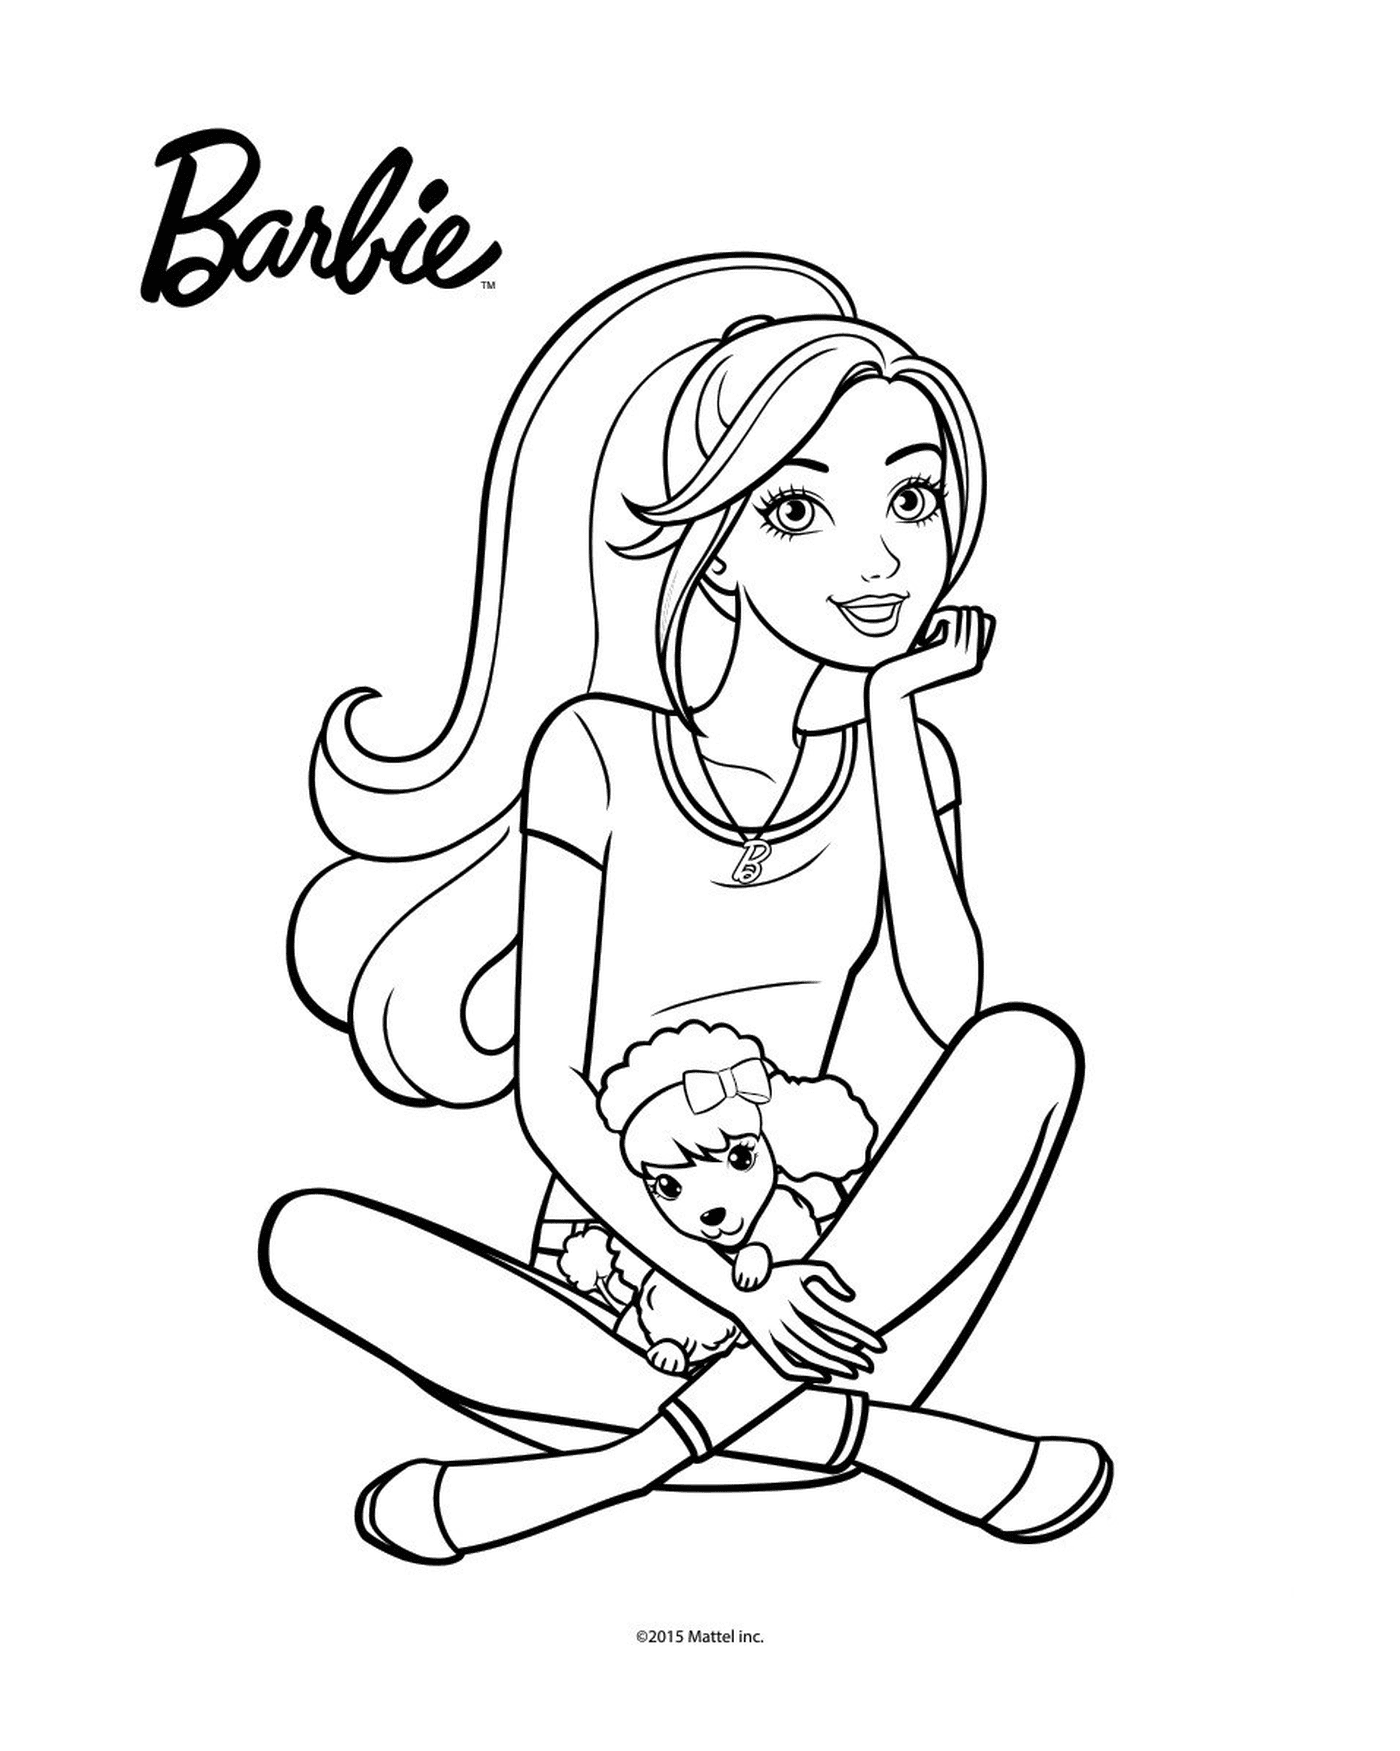  Barbie sentada en el suelo sosteniendo una muñeca 